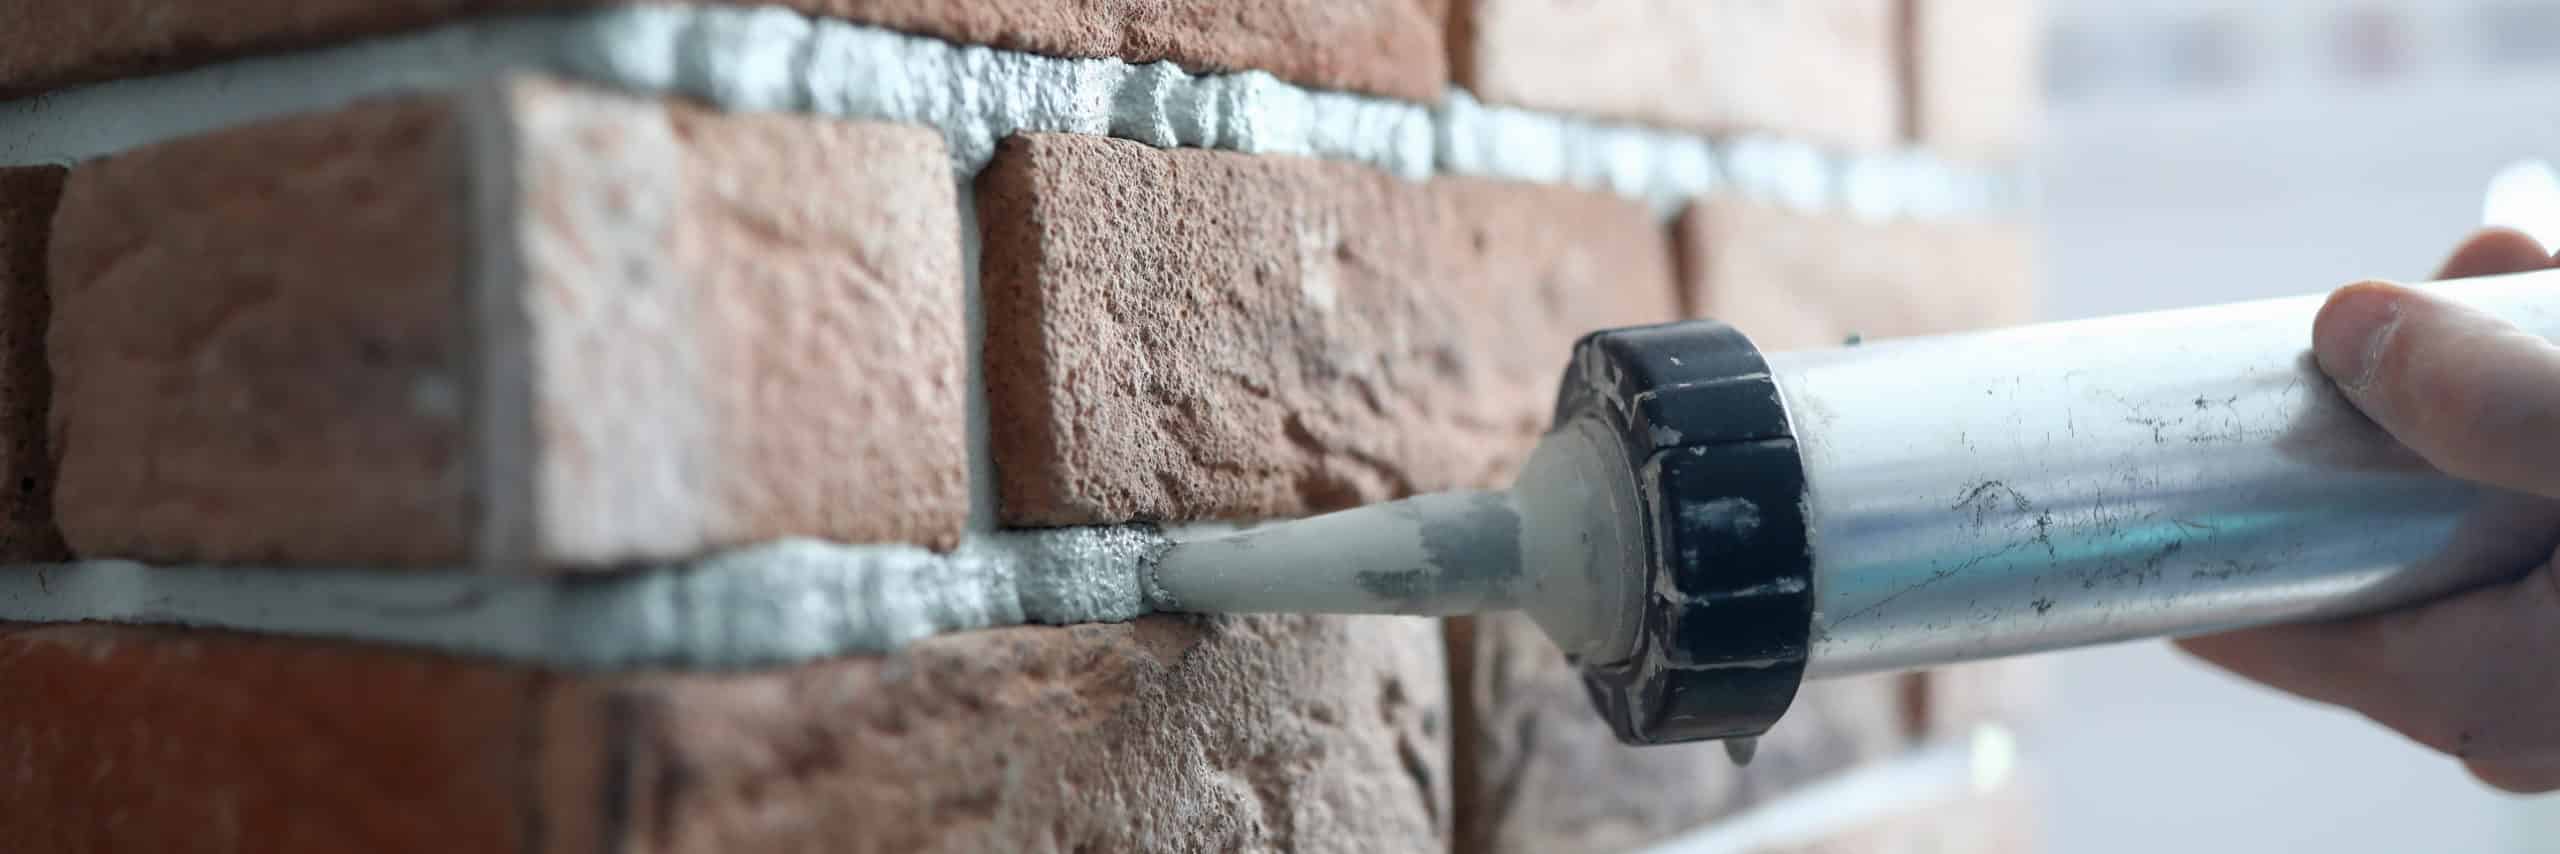 Brick Repair: DIY or Call The Experts?